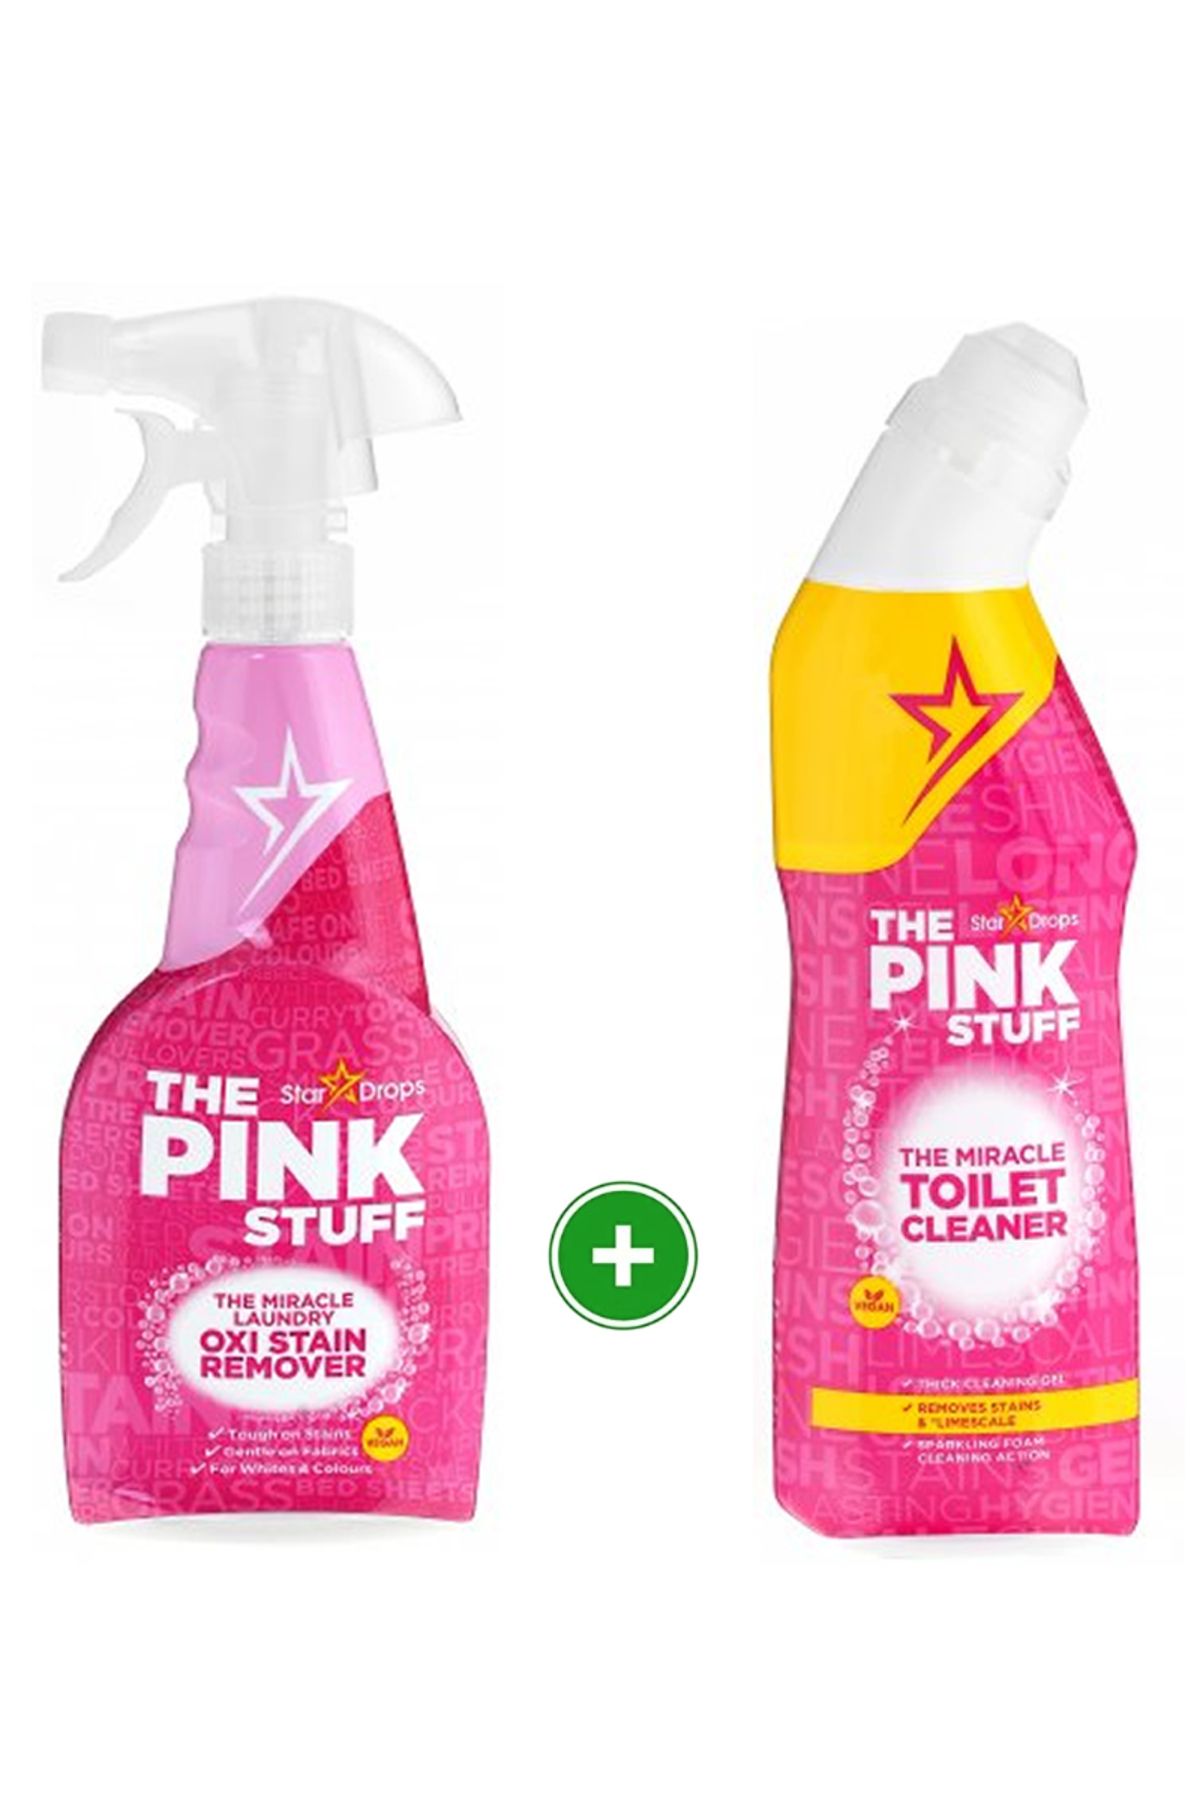 ThePinkStuff The Pink Stuff Temizlik Oxi Leke Çıkarıcı Sprey 500 ml The Pink Stuff Tuvalet Temizleyici 750 ml